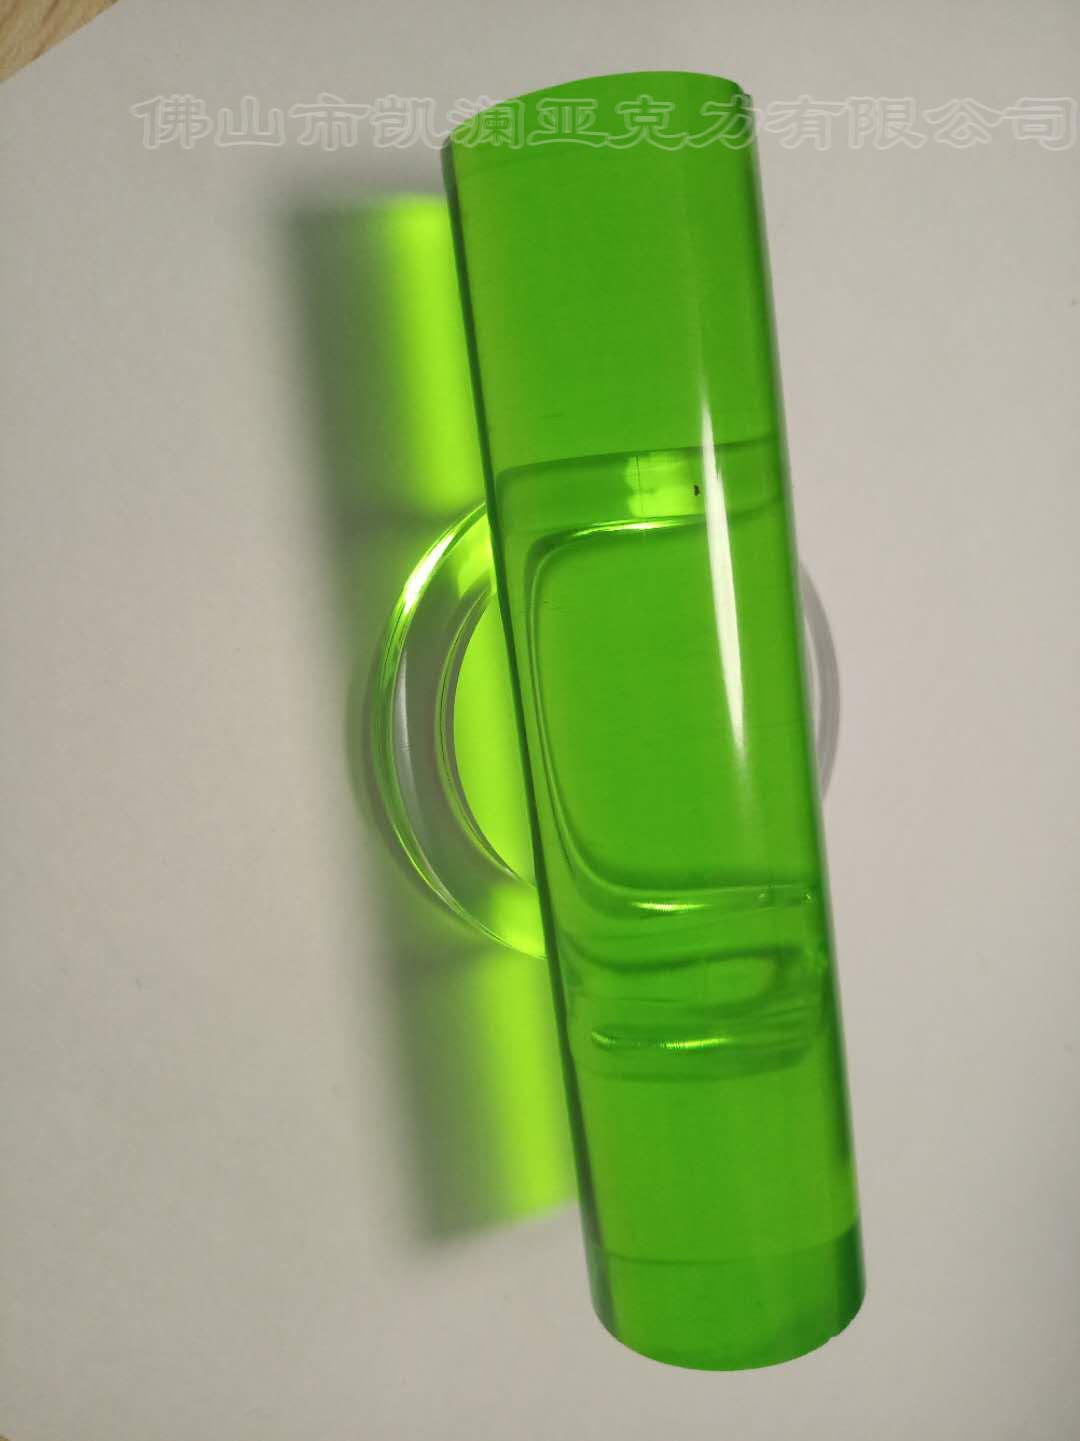 优质亚克力棒材 透明绿色有机玻璃